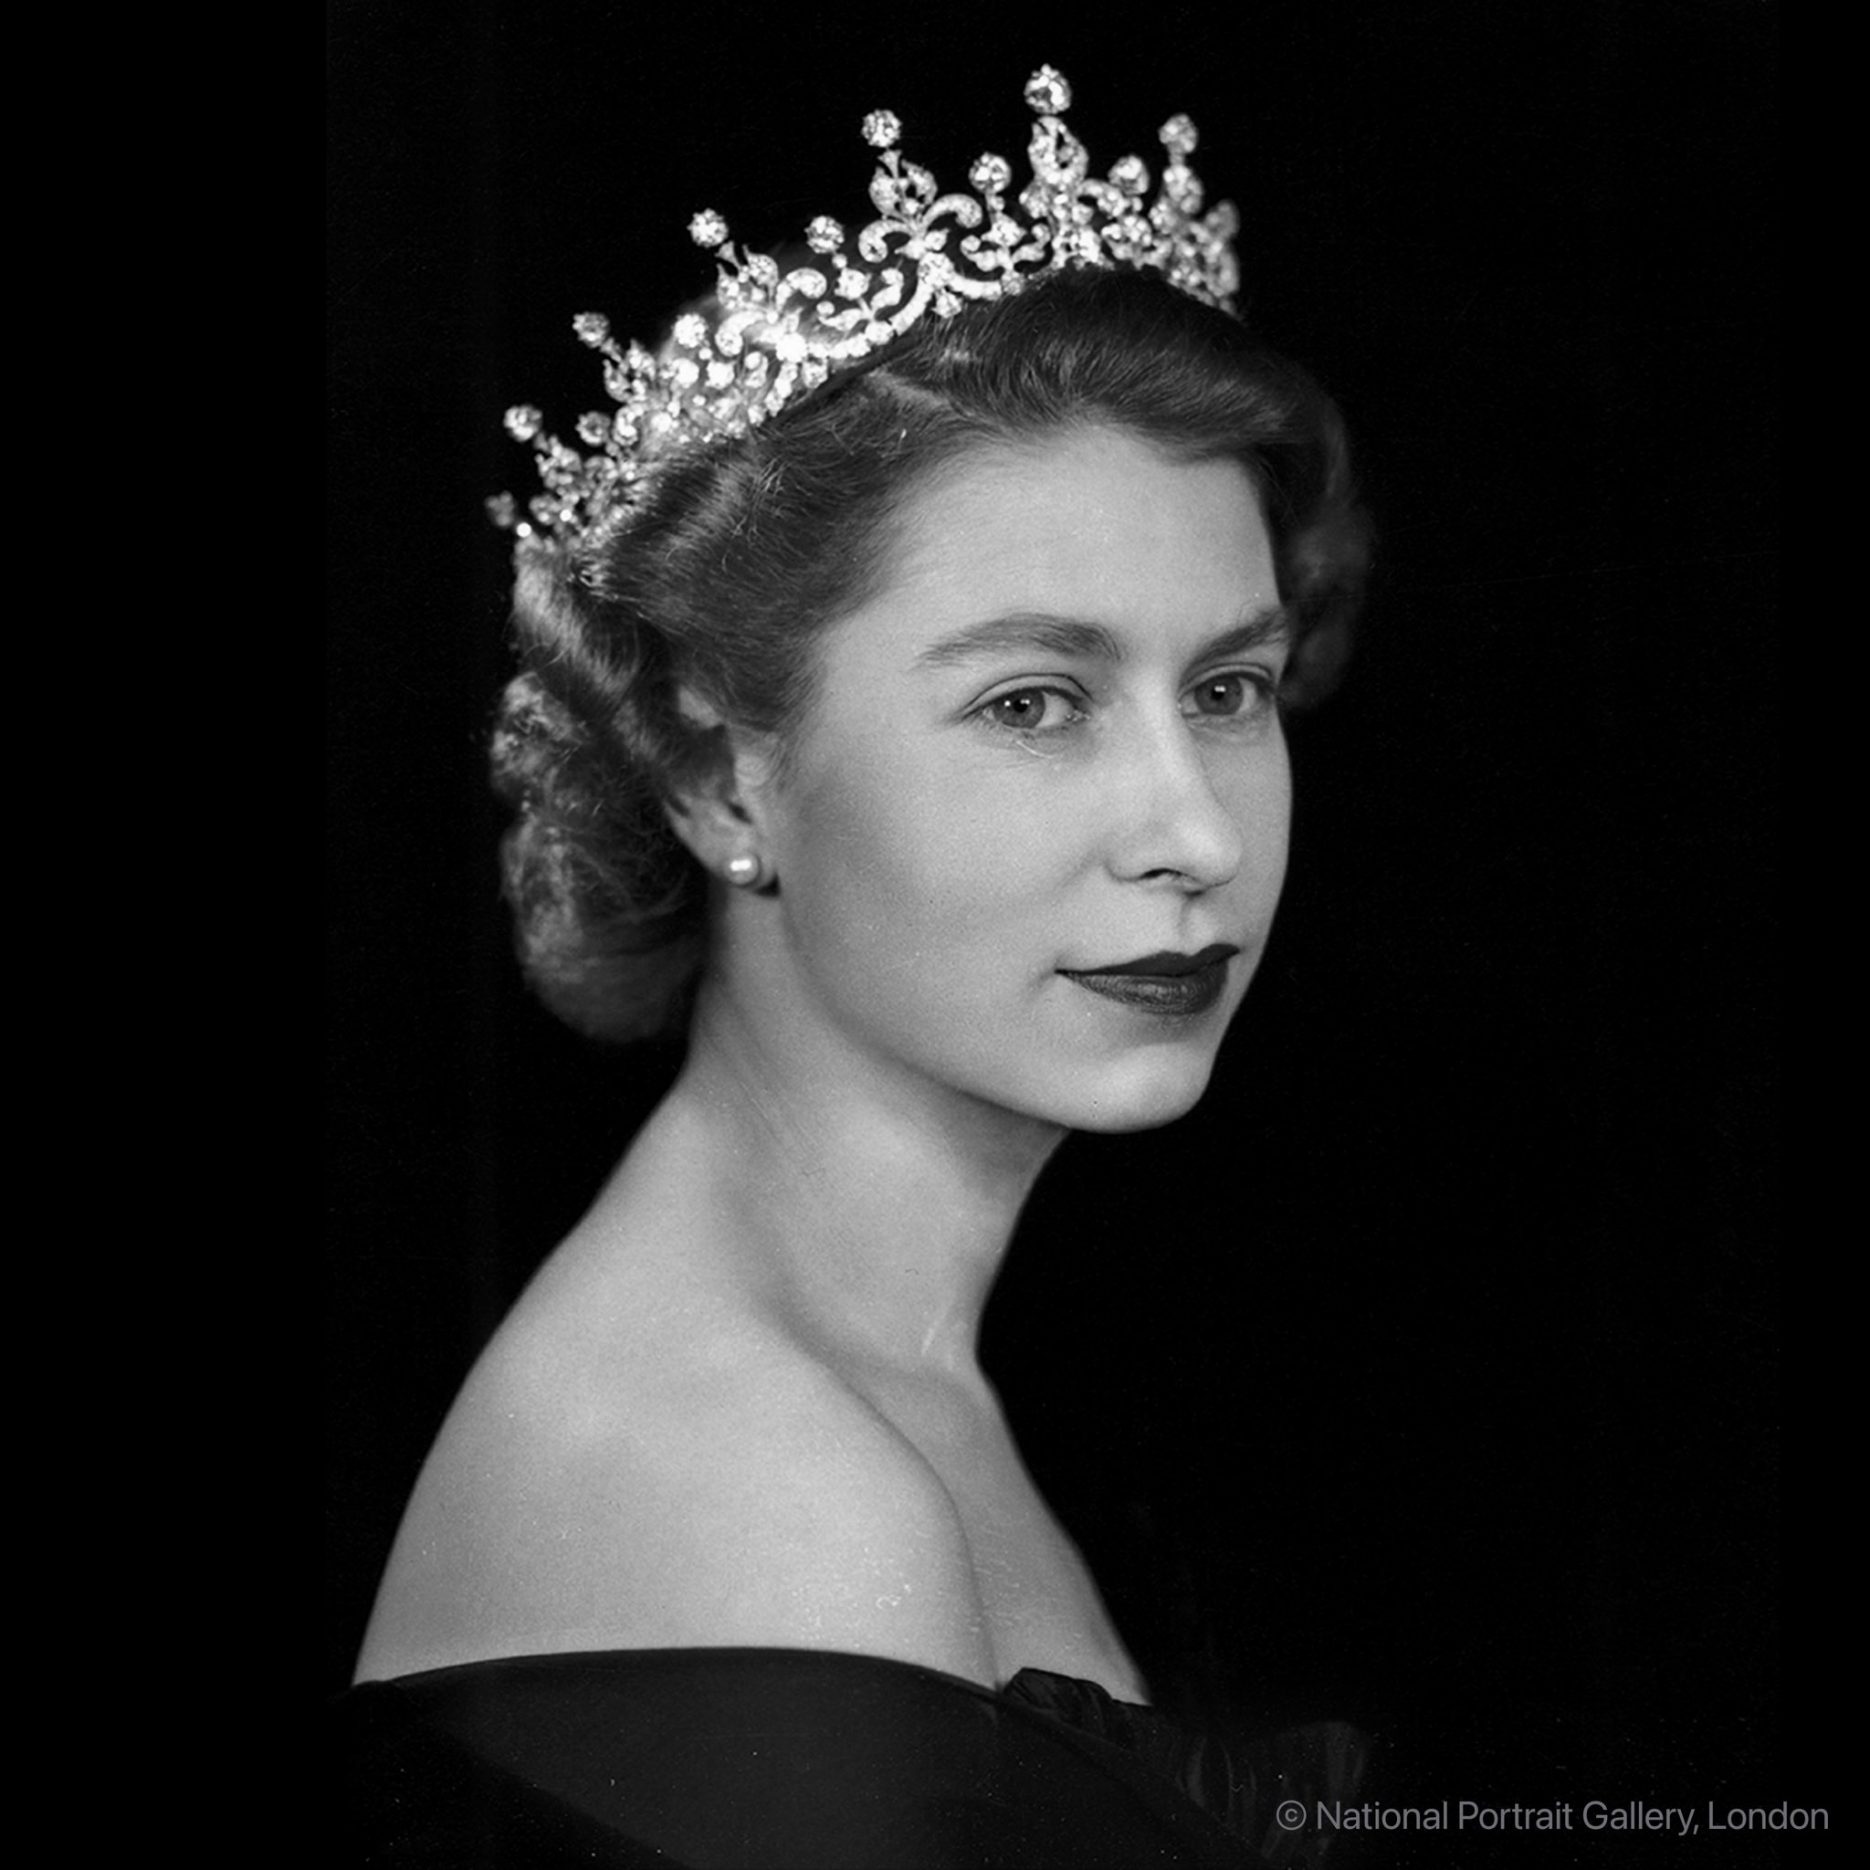 Her Majesty Queen Elizabeth II Passes